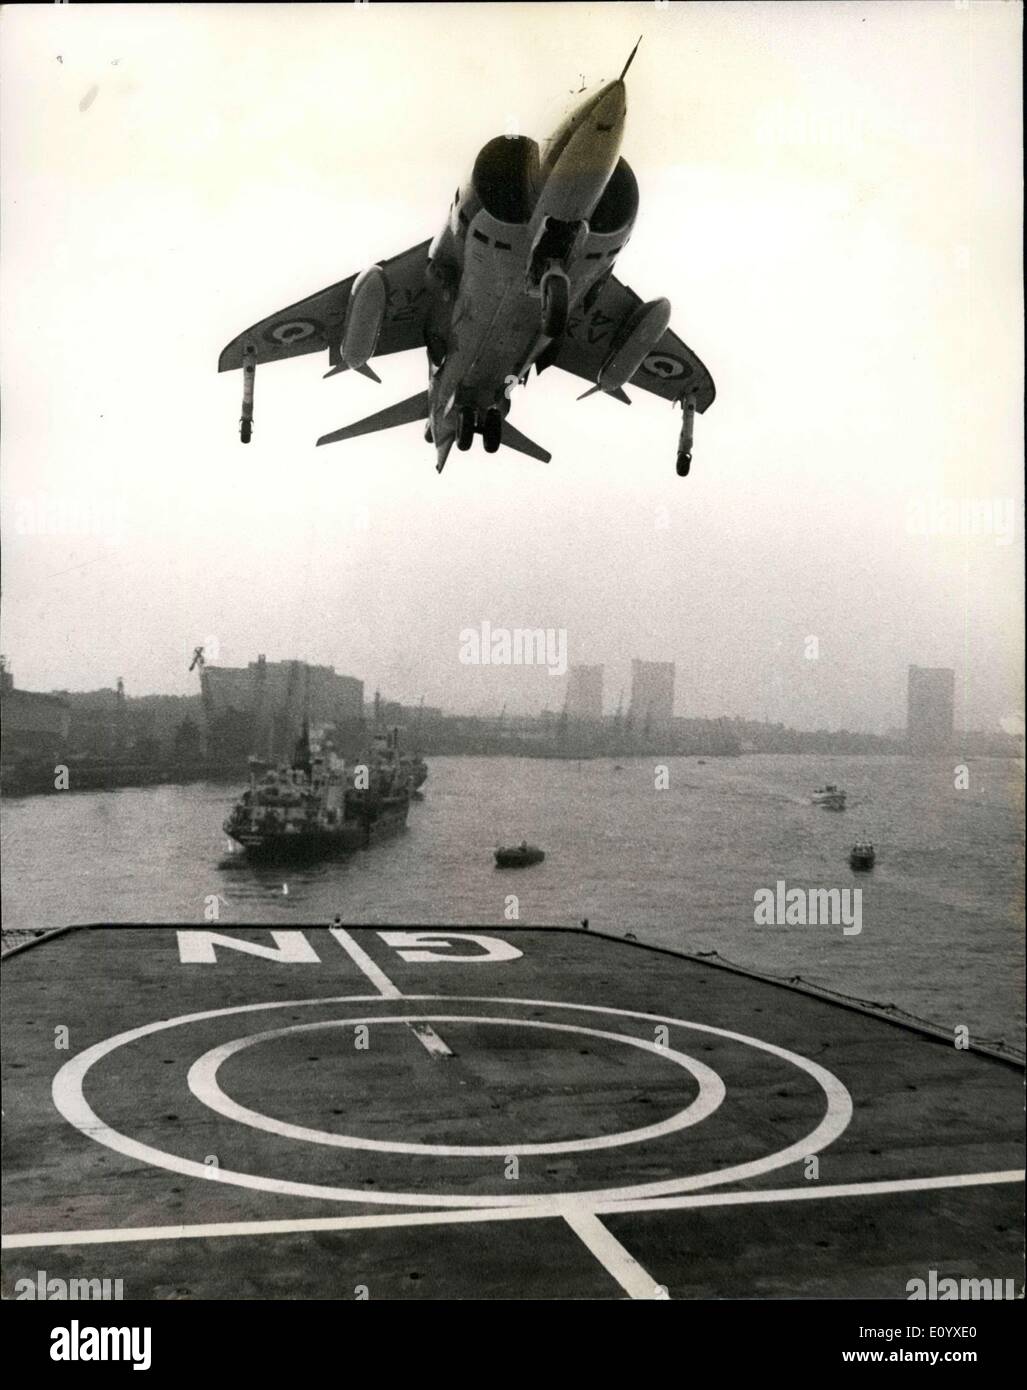 Septembre 22, 1971 - appontage de Harrier Jump Jet à Greenwich : UN Hawker Siddeley Harrier V/Stol jet aujourd'hui fait un atterrissage vertical et prendre -off à partir du pont de la Royal Fleet Auxiliary ''Green Rover'', amarré dans la Tamise à Greenwich, Londres, l'opération a été regardé par des officiers supérieurs de nombreuses marines du monde, qui étaient inscrits à l'équipement de la Marine royale exposition au Royal Naval College, Greenwich Banque D'Images